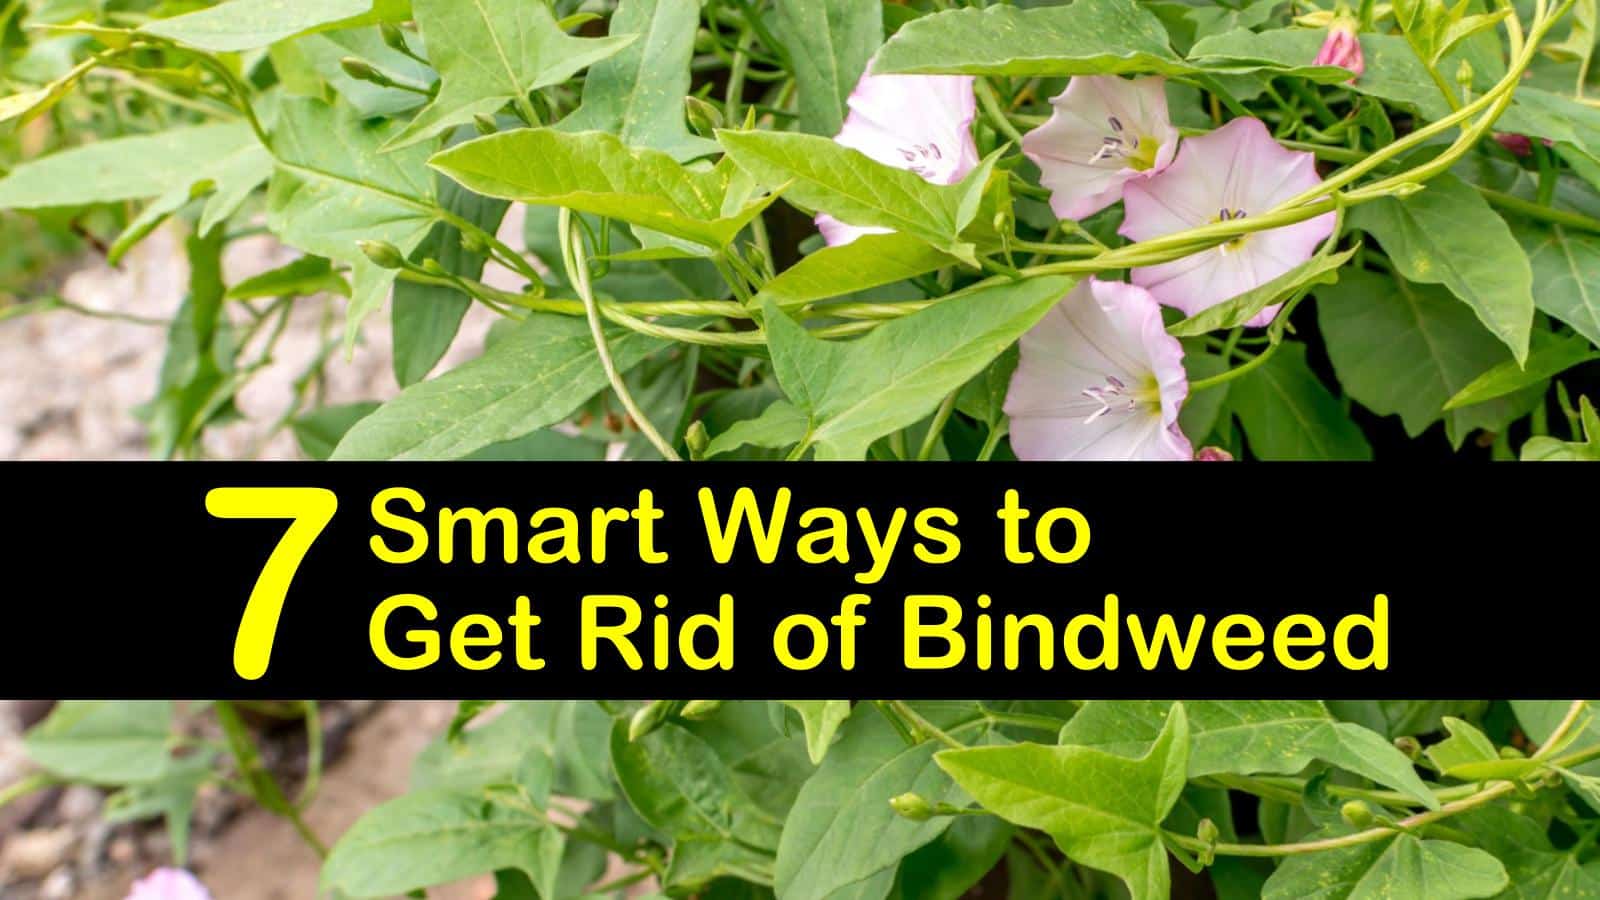 7 Smart Ways to Get Rid of Bindweed